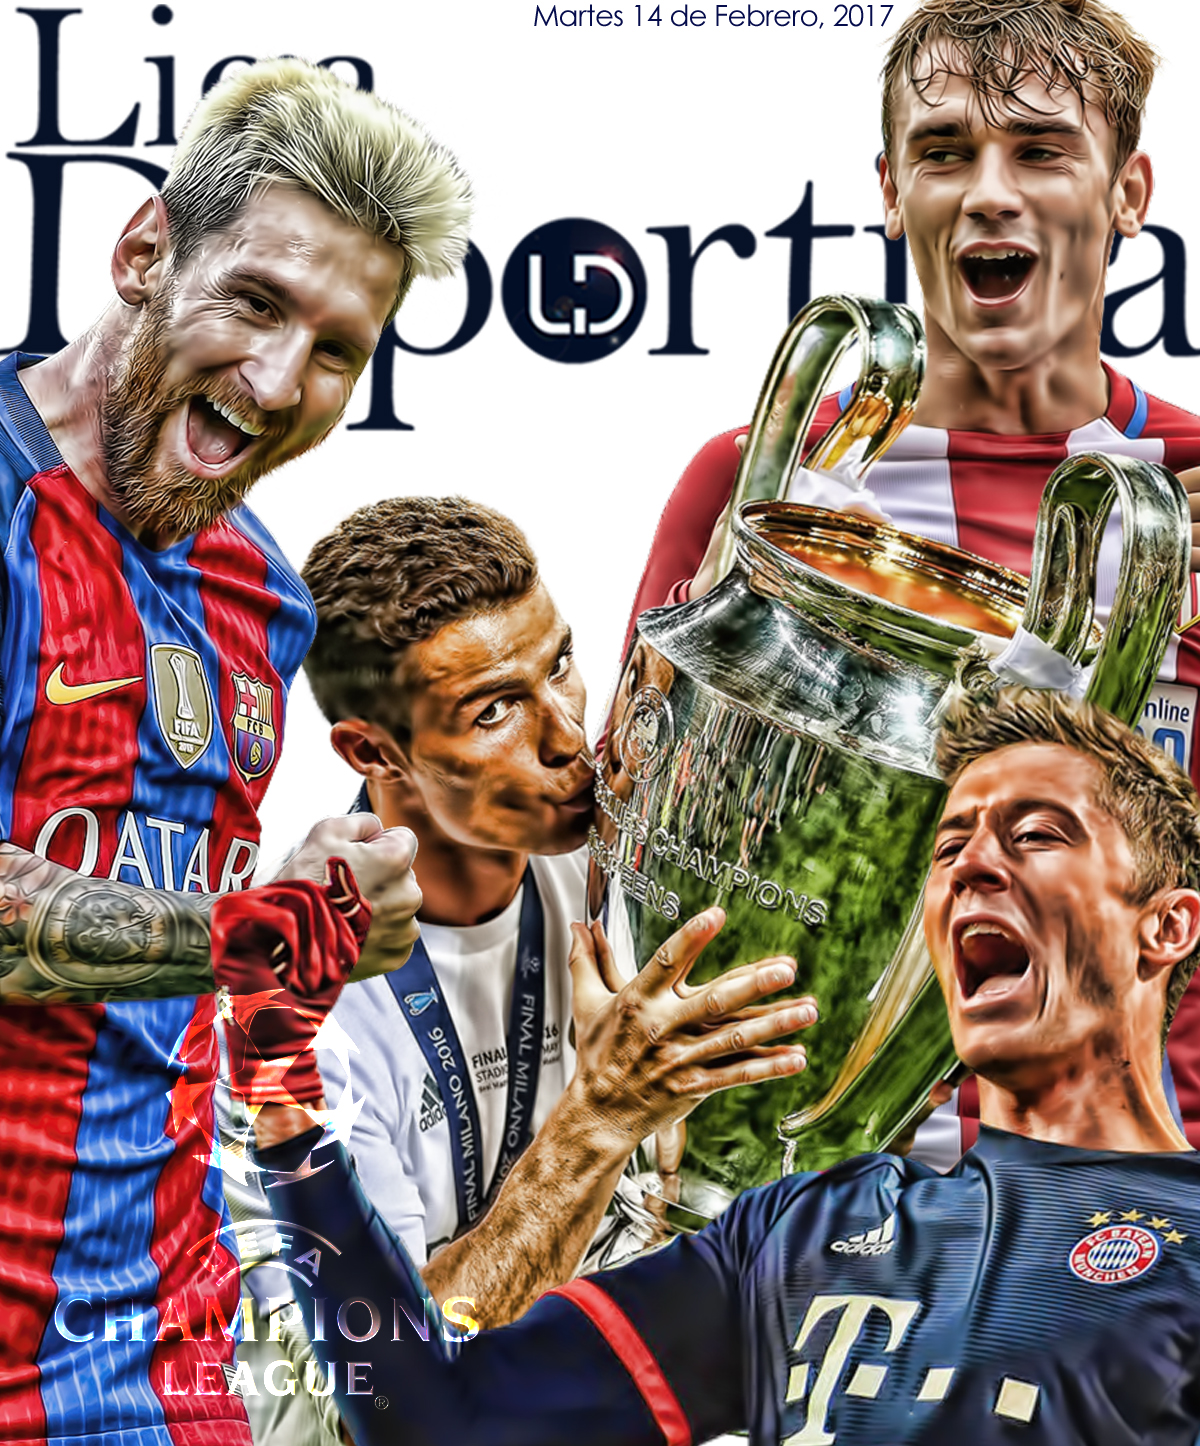 Europa se empapa del mejor fútbol del mundo "Champions League"